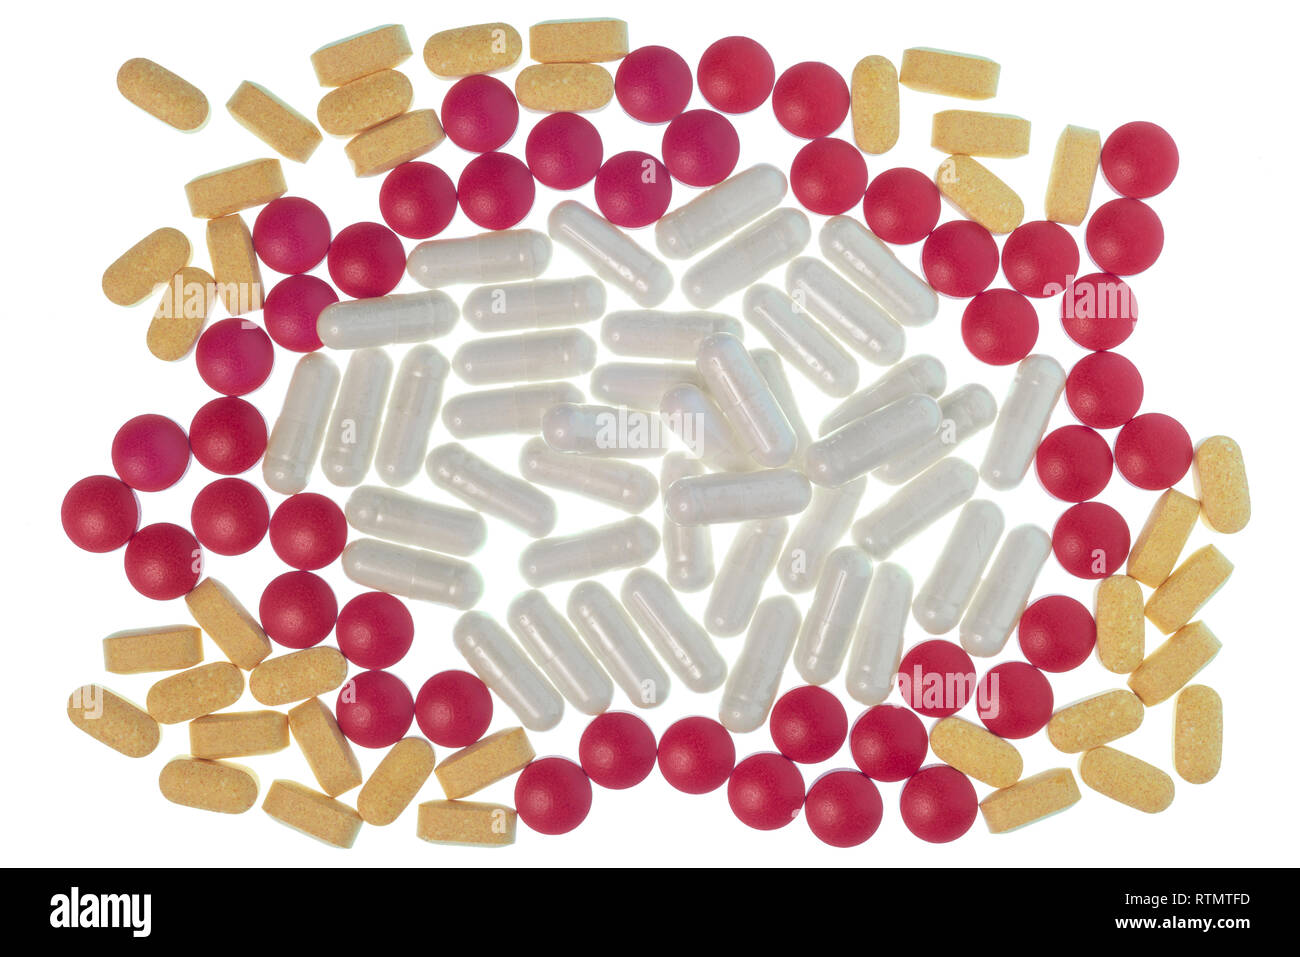 Horizontale Schuß von roten, weißen und gelben Pillen, Tabletten und Kapseln in einem kreisförmigen Muster isoliert auf Weiss. Stockfoto